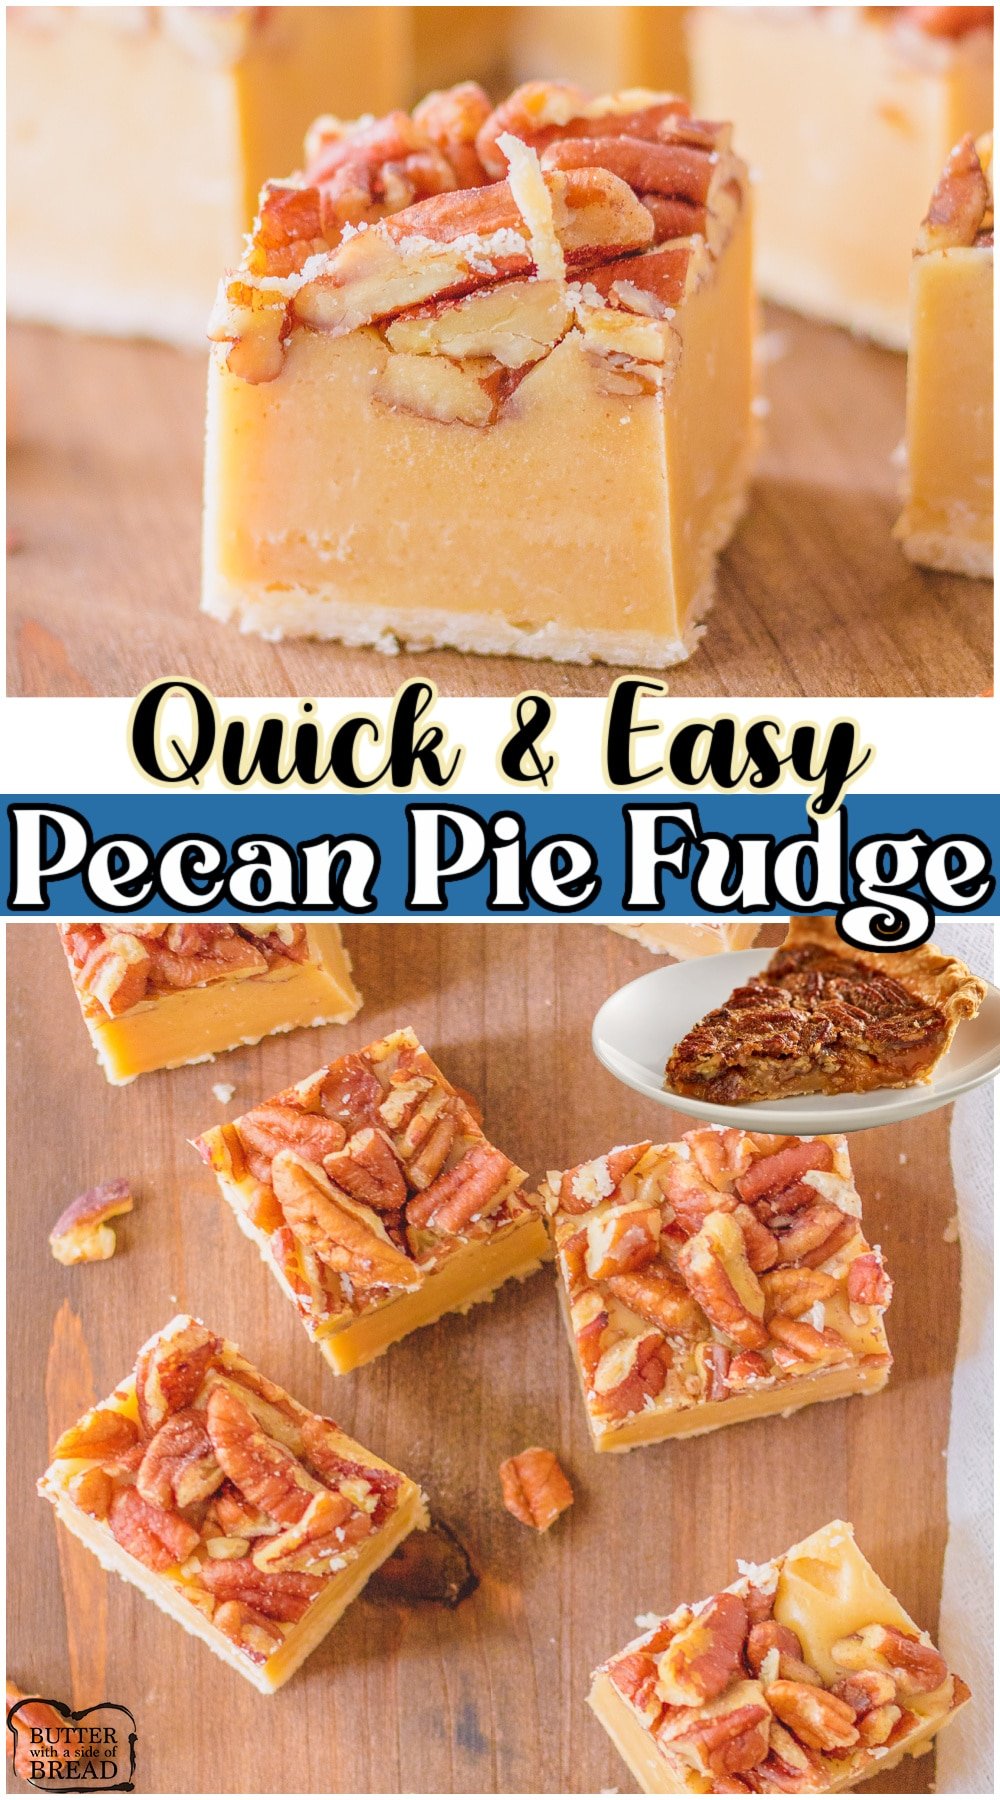 Pecan Pie Fudge is simple fudge recipe based on classic pecan pie! Pecan fudge complete with pie crust, butter, pecans, white chocolate chips & evaporated milk.